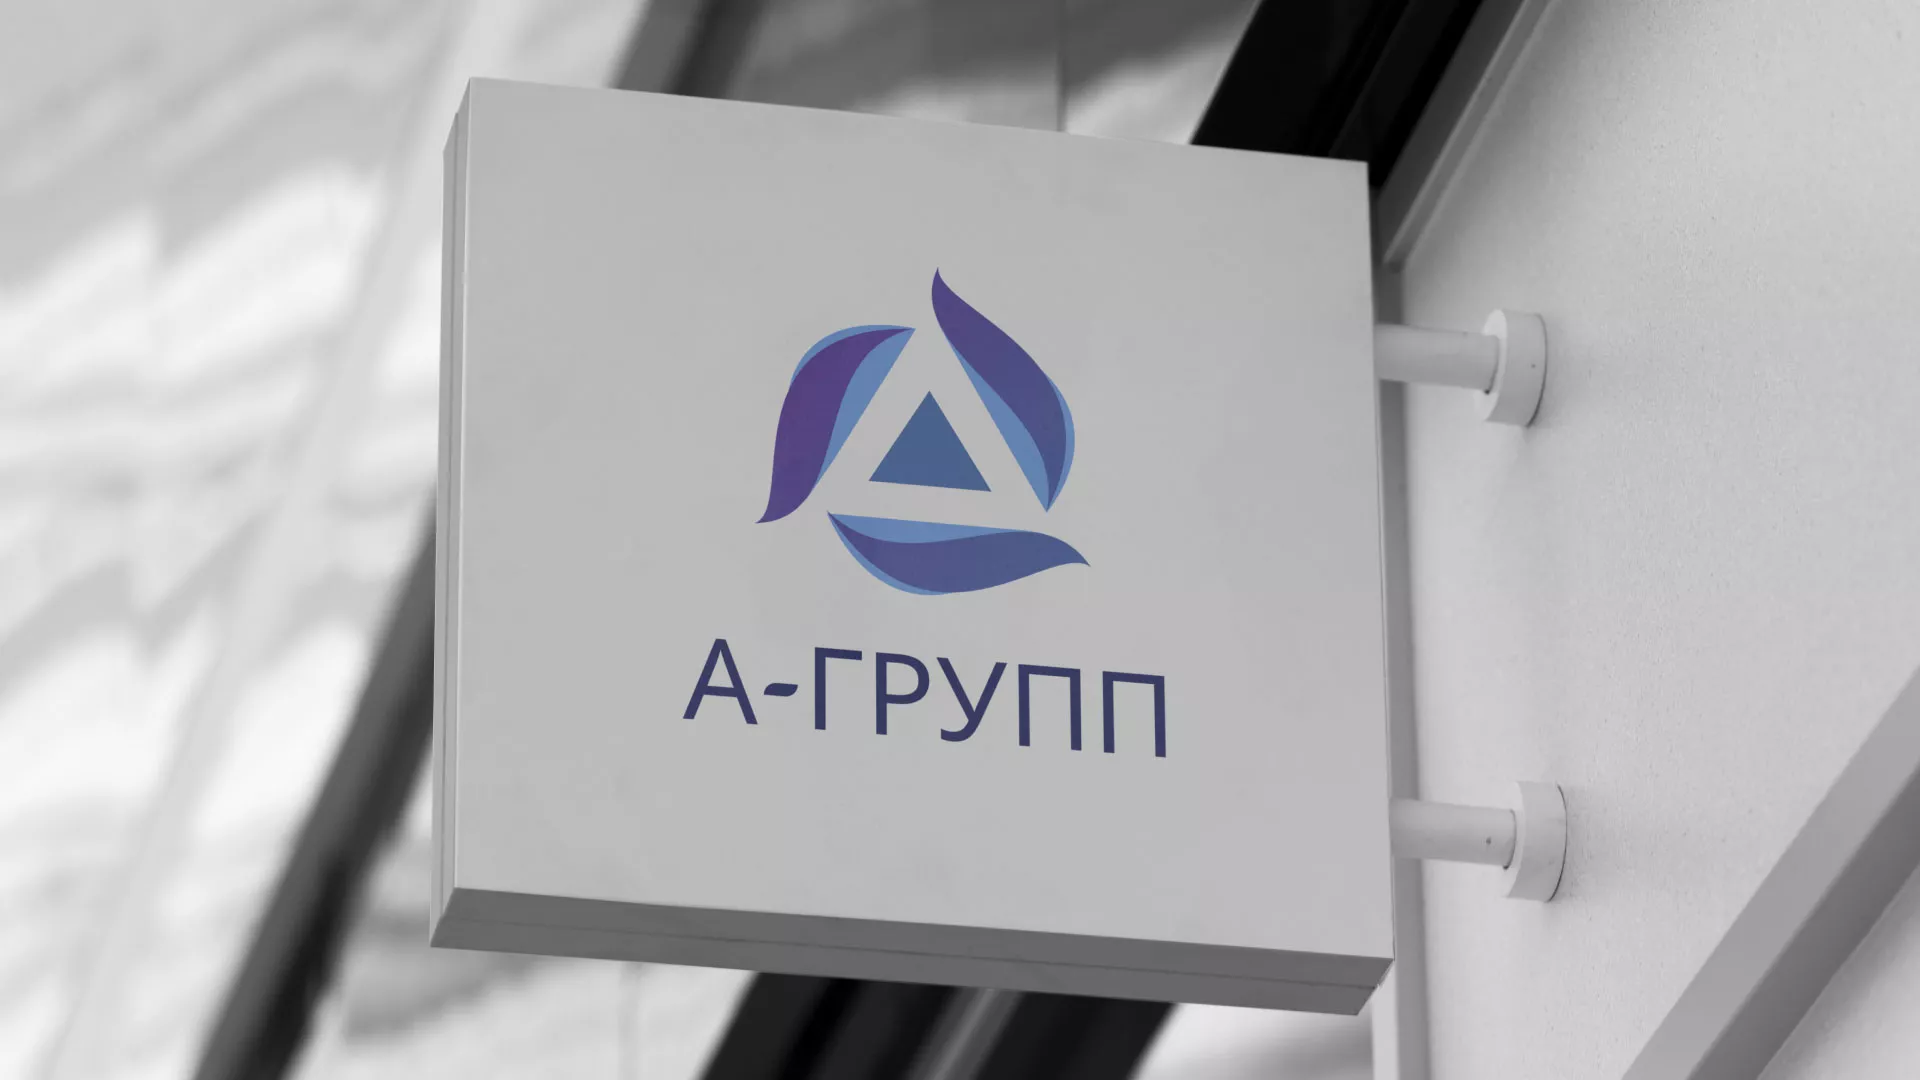 Создание логотипа компании «А-ГРУПП» в Шахтёрске